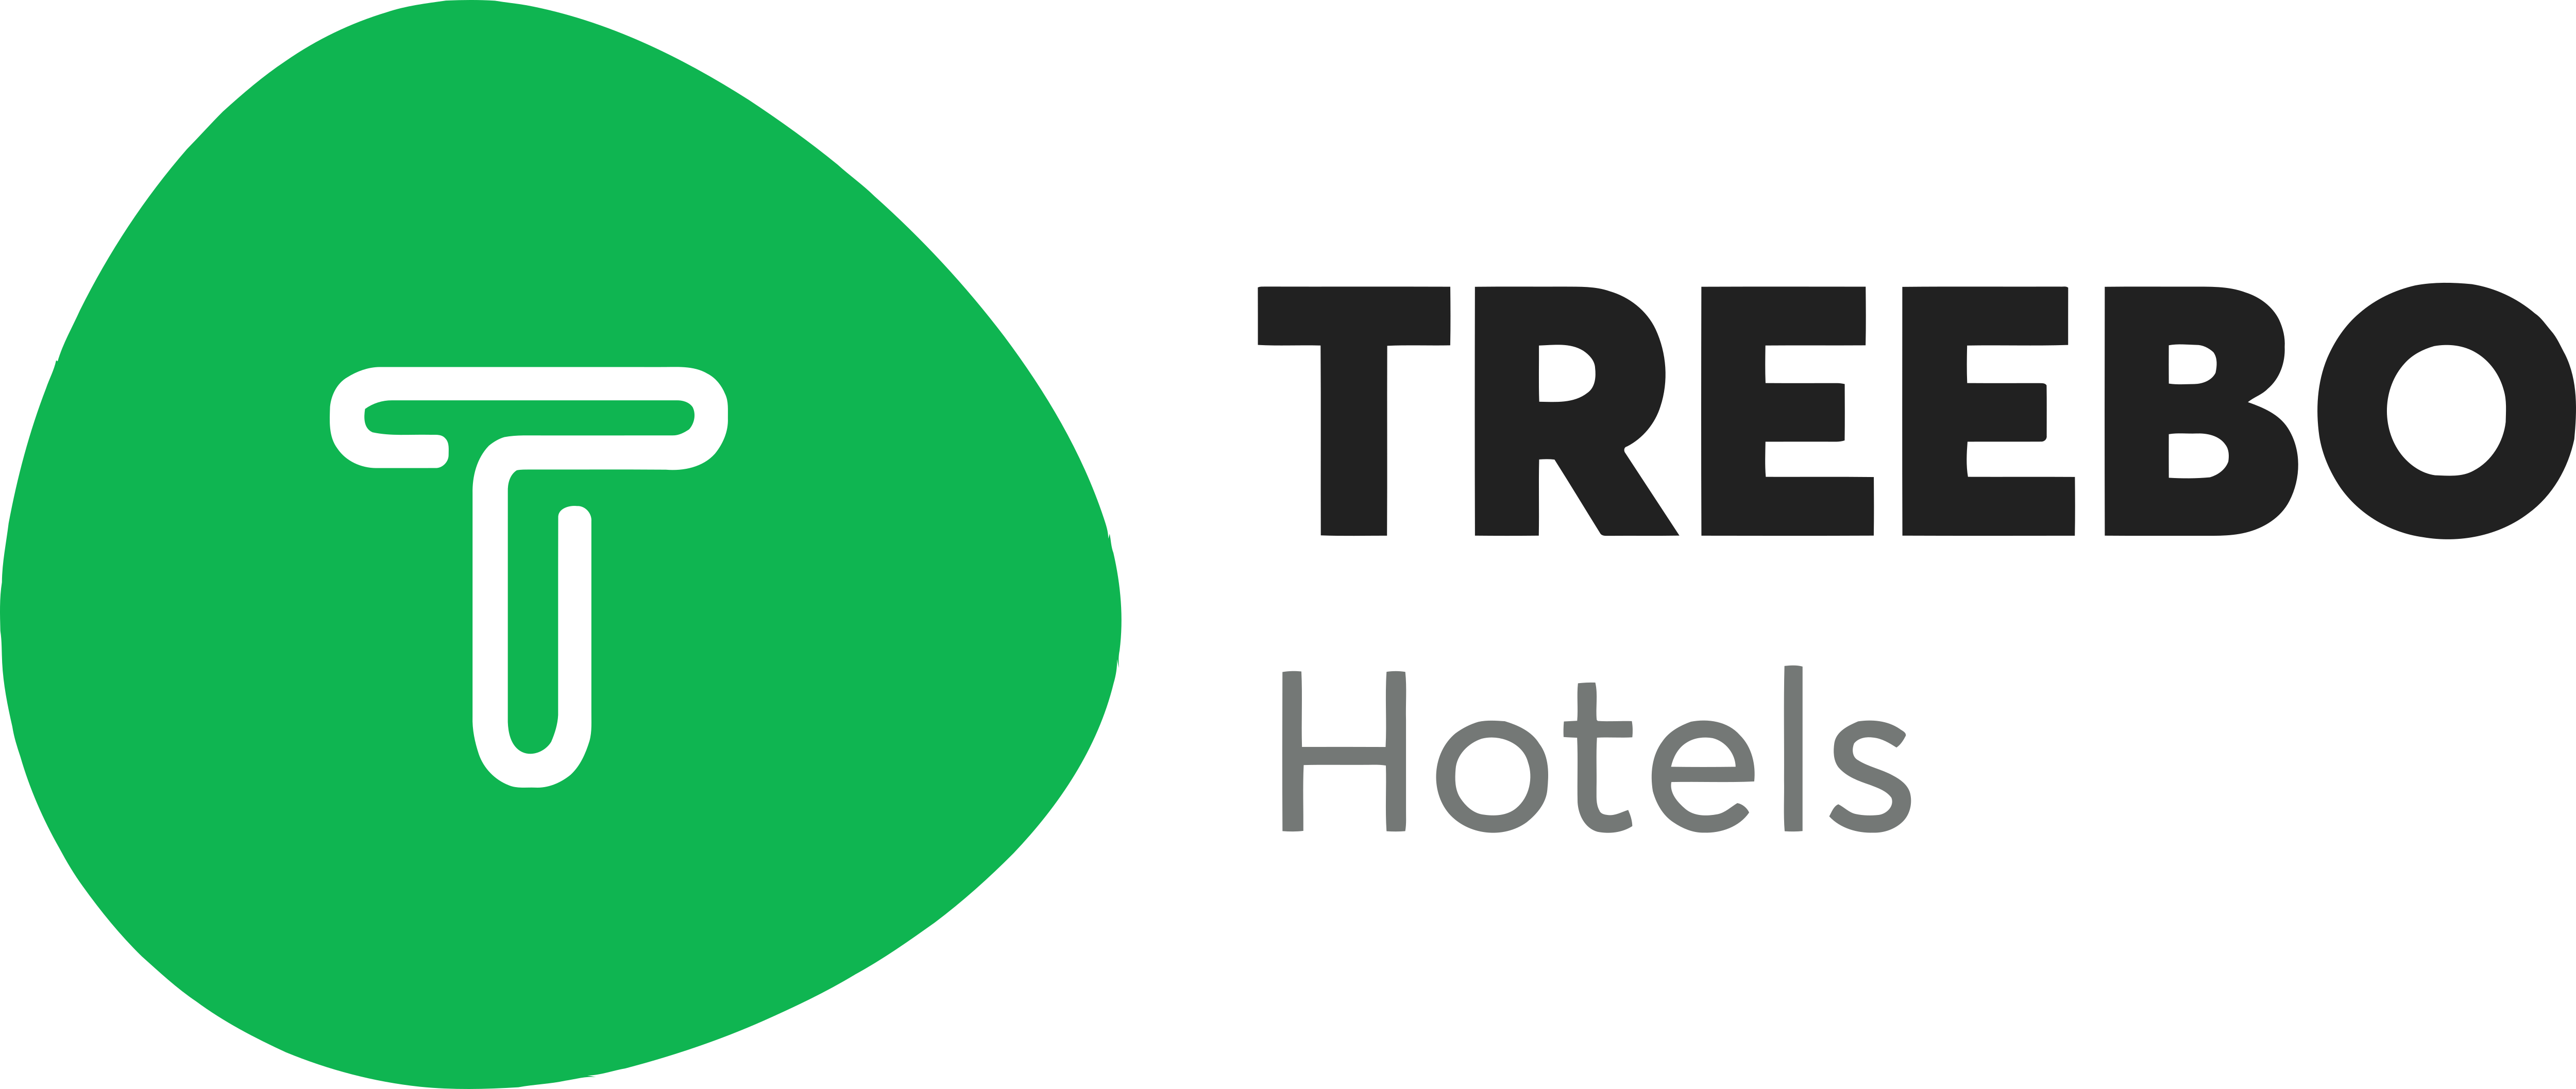 treebo hotels